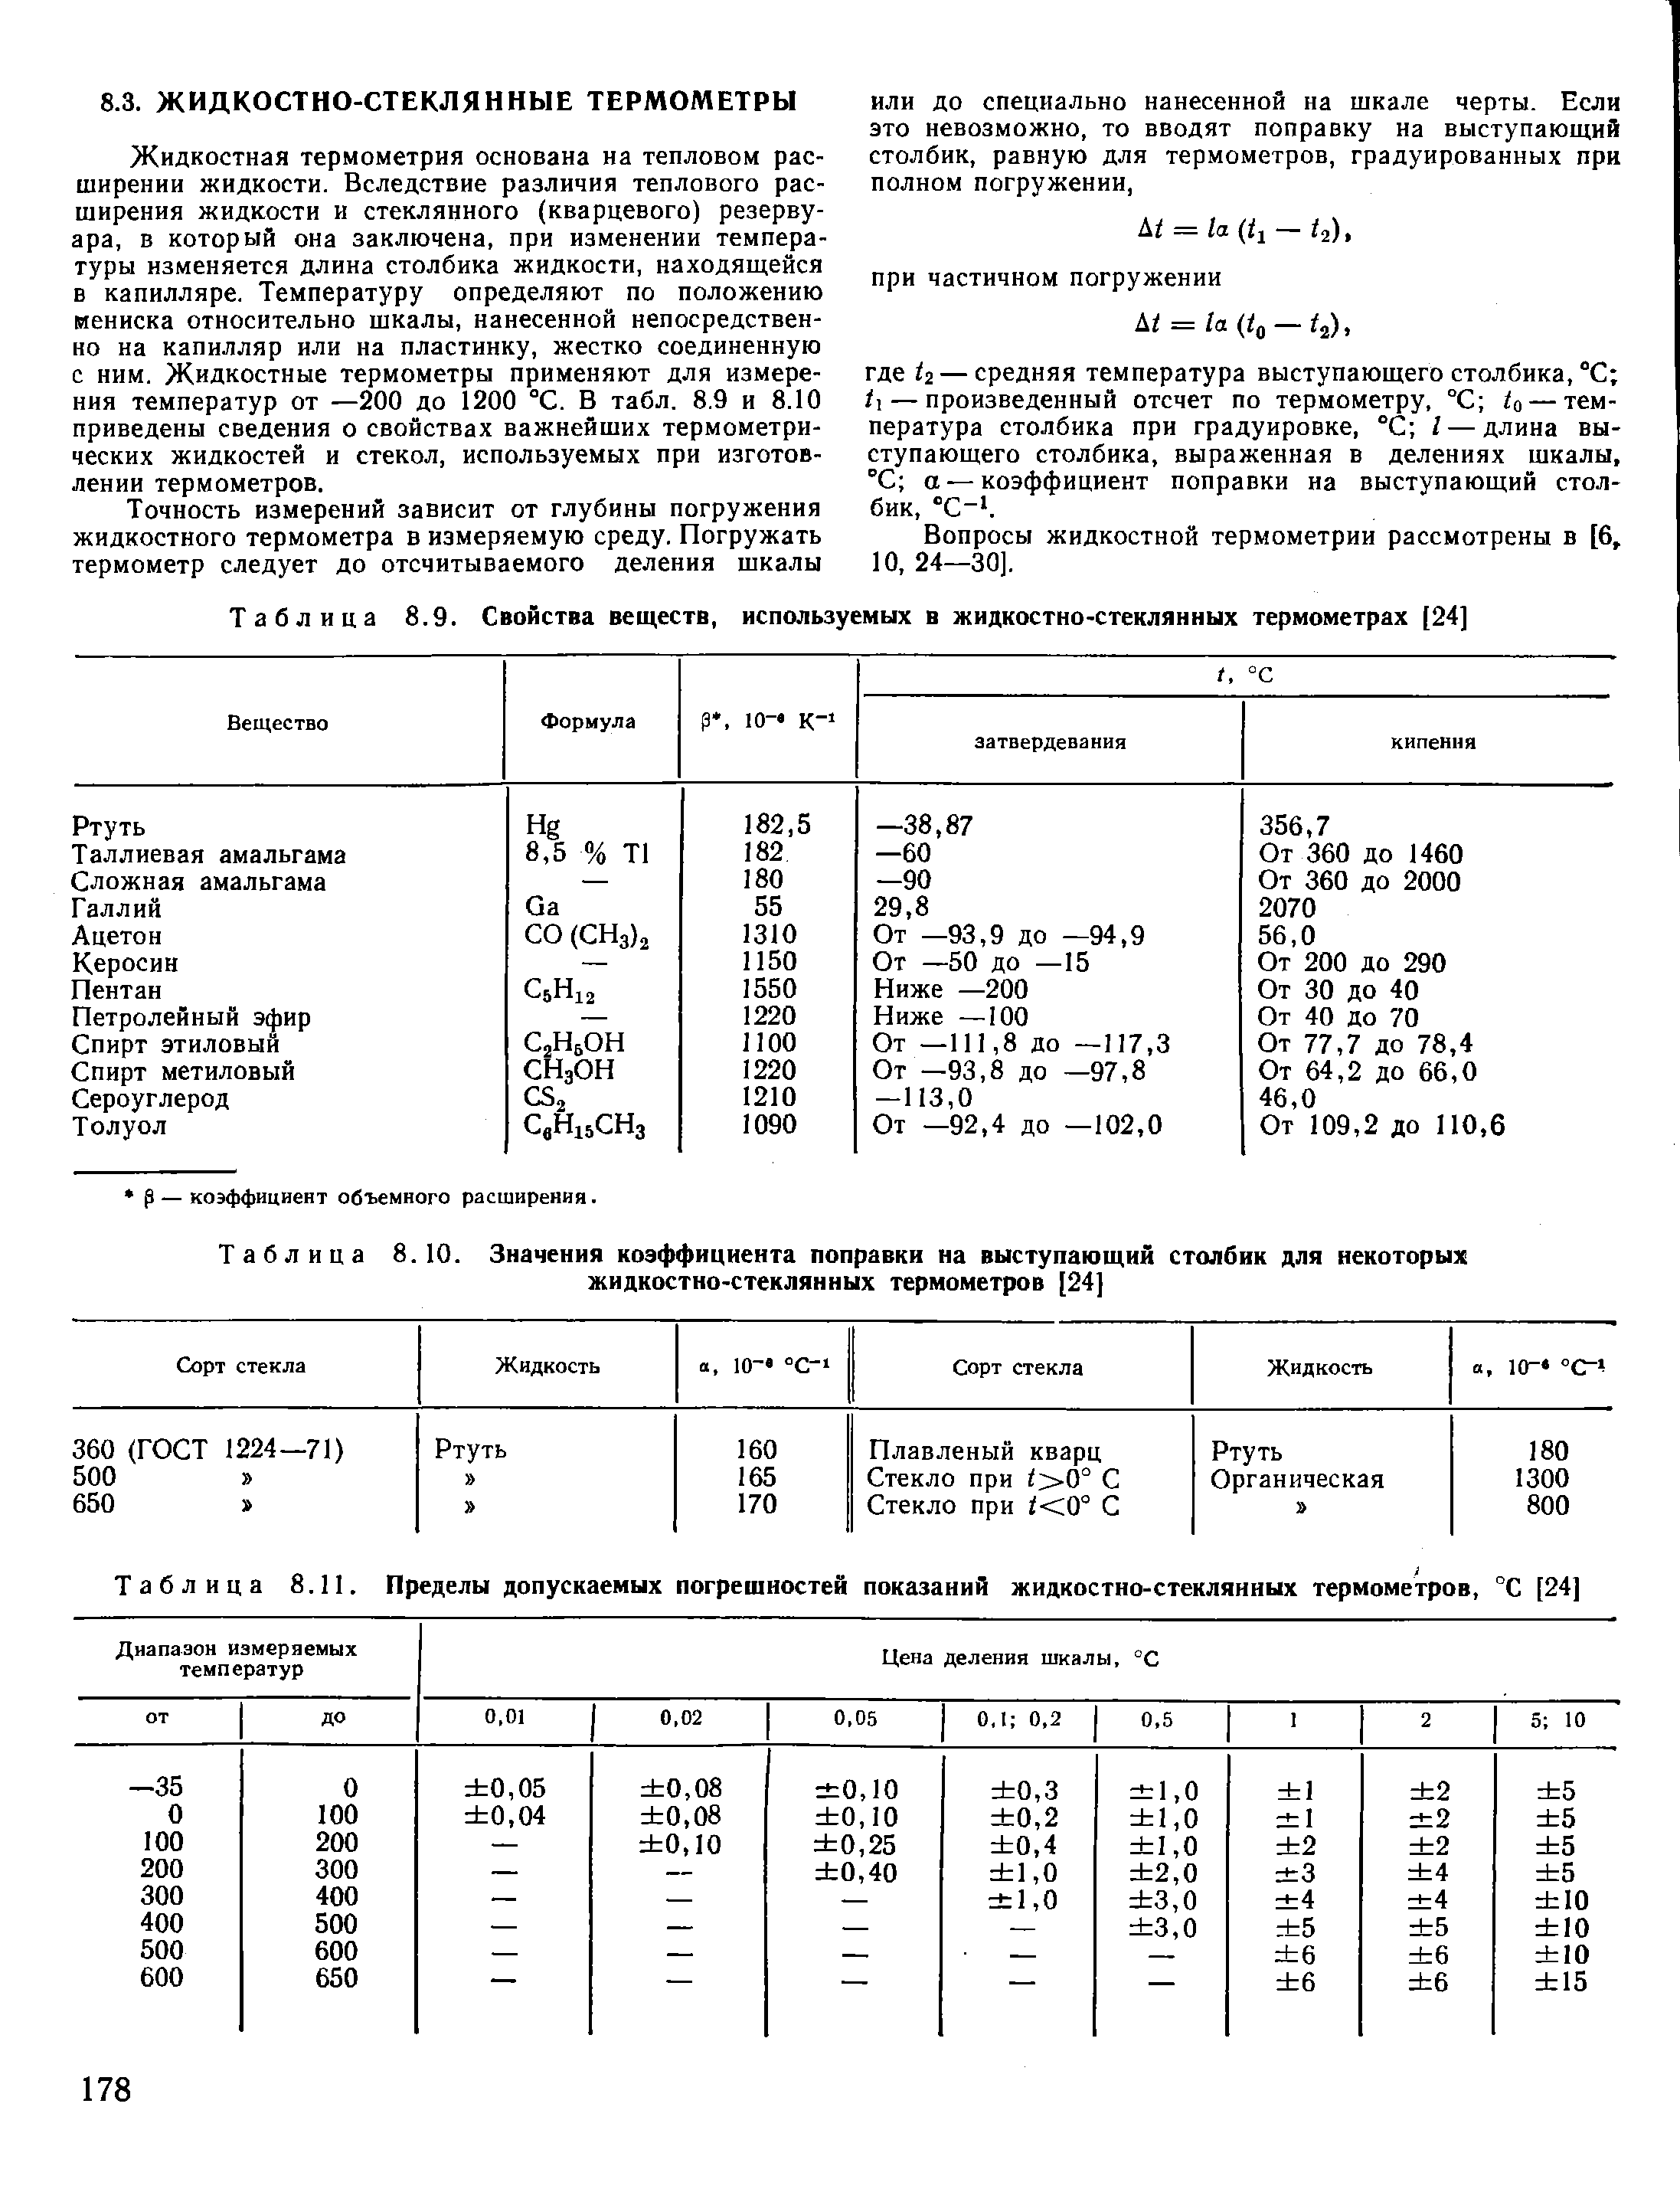 Таблица 8.9. Свойства веществ, используемых в жидкостно-стеклянных термометрах [24]
